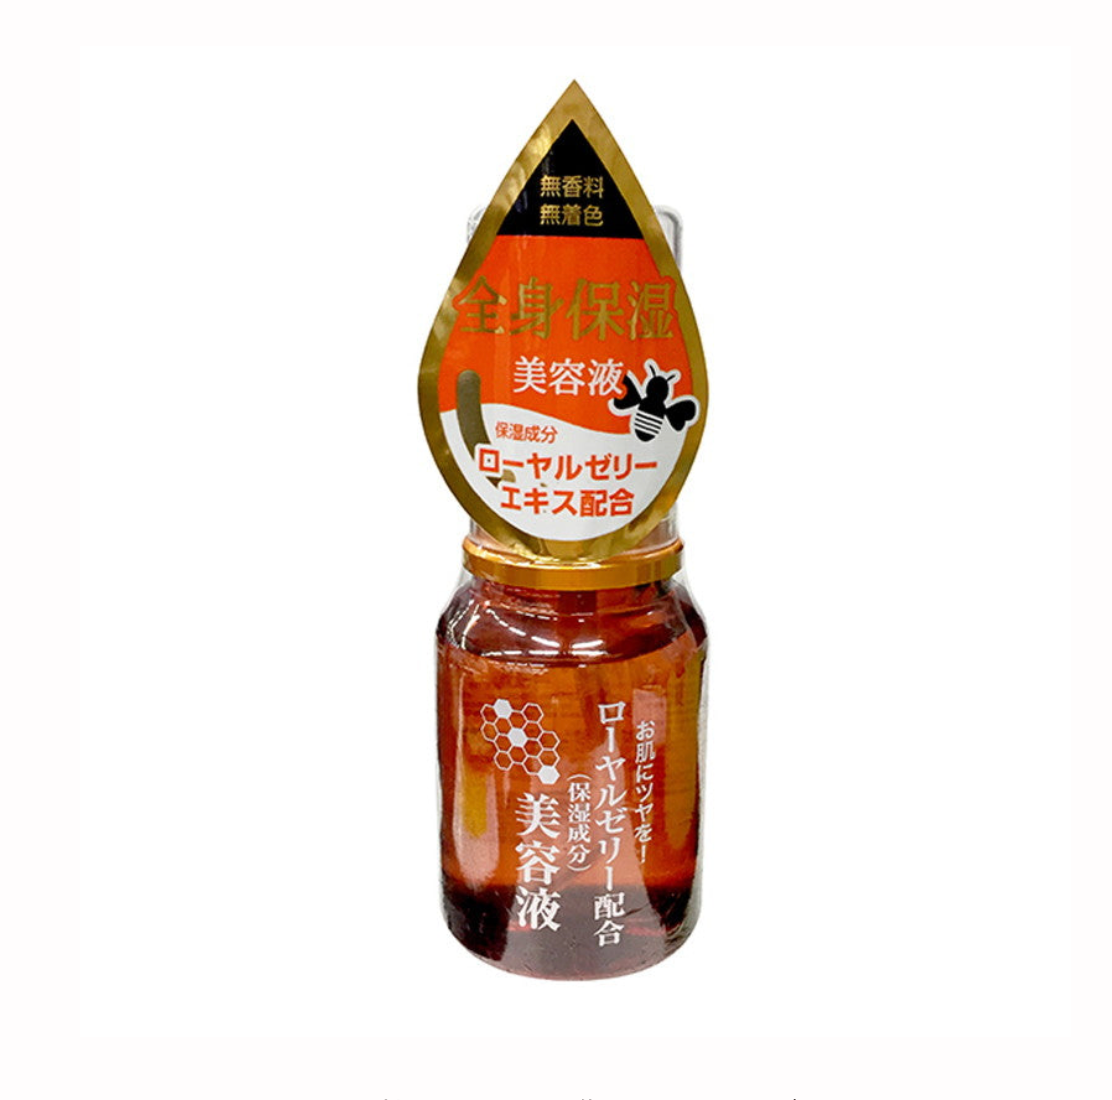 Royal Jelly เซรั่มนมผึ้ง รอยัลเจลลี่ จากญี่ปุ่น